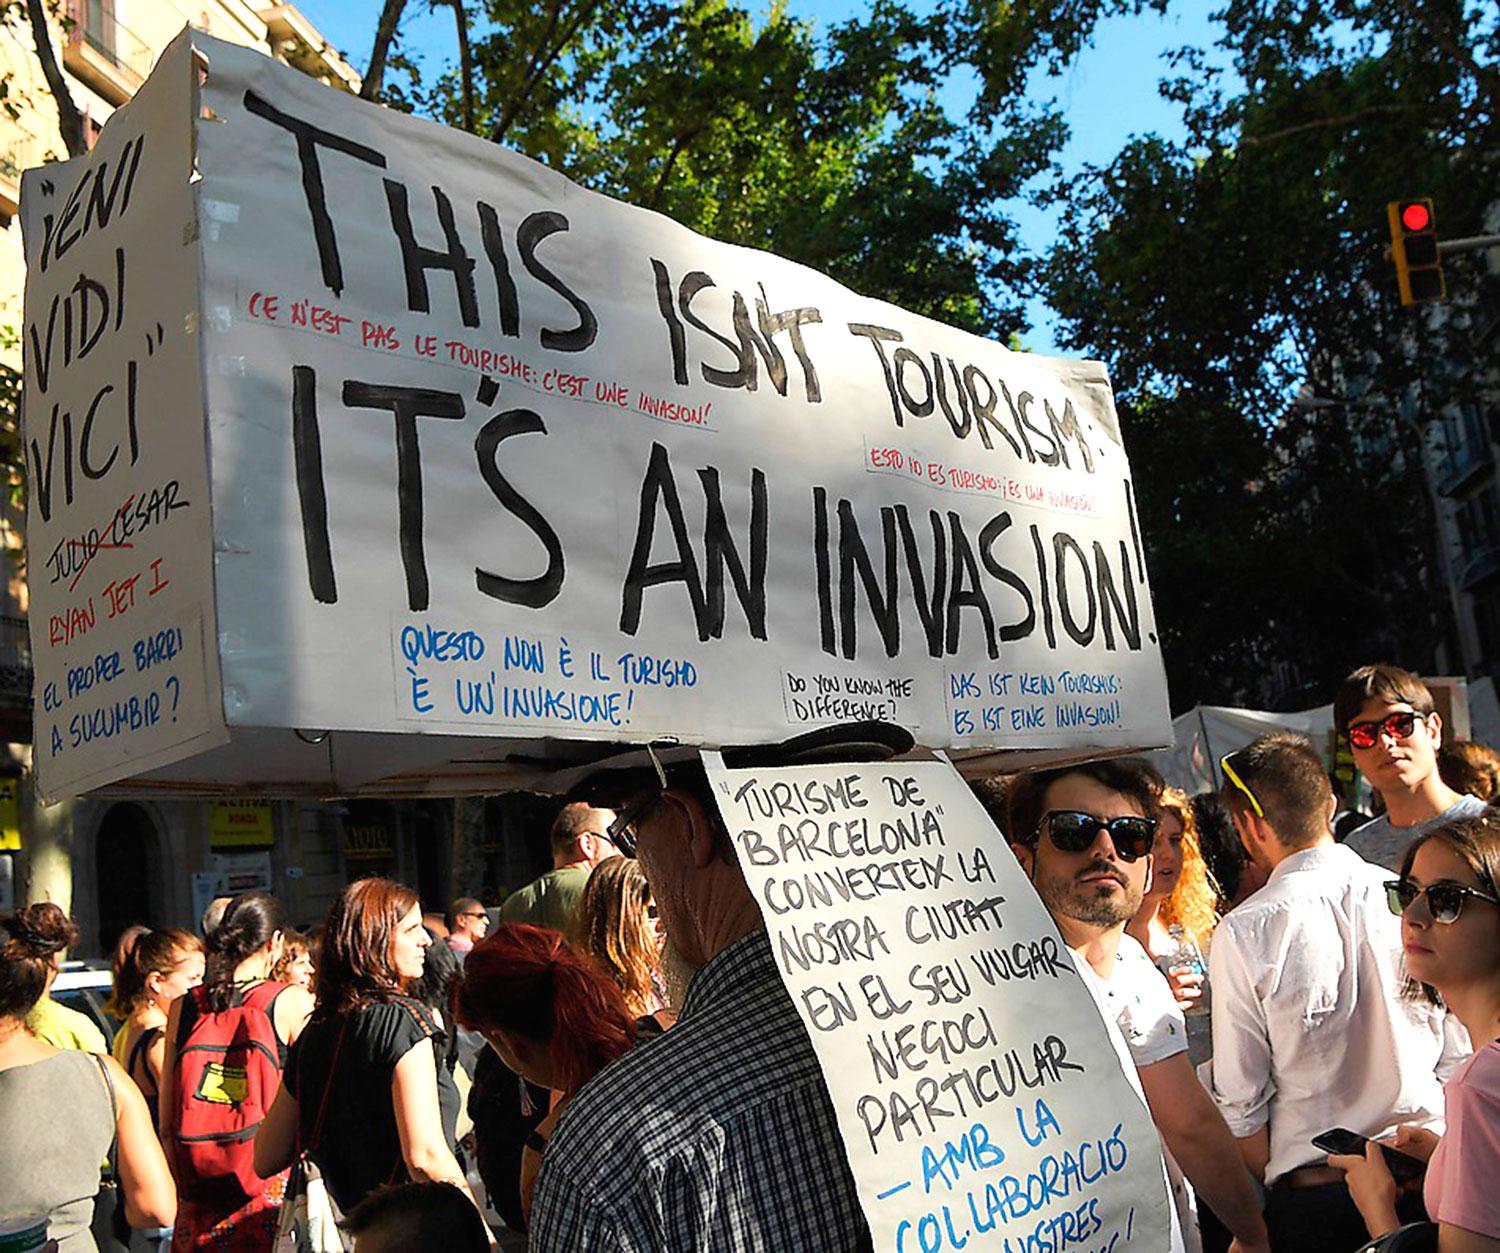 Invånarna i Barcelona under en protest. ”Det här är inte turism, det är en invasion”, står det på plakaten.